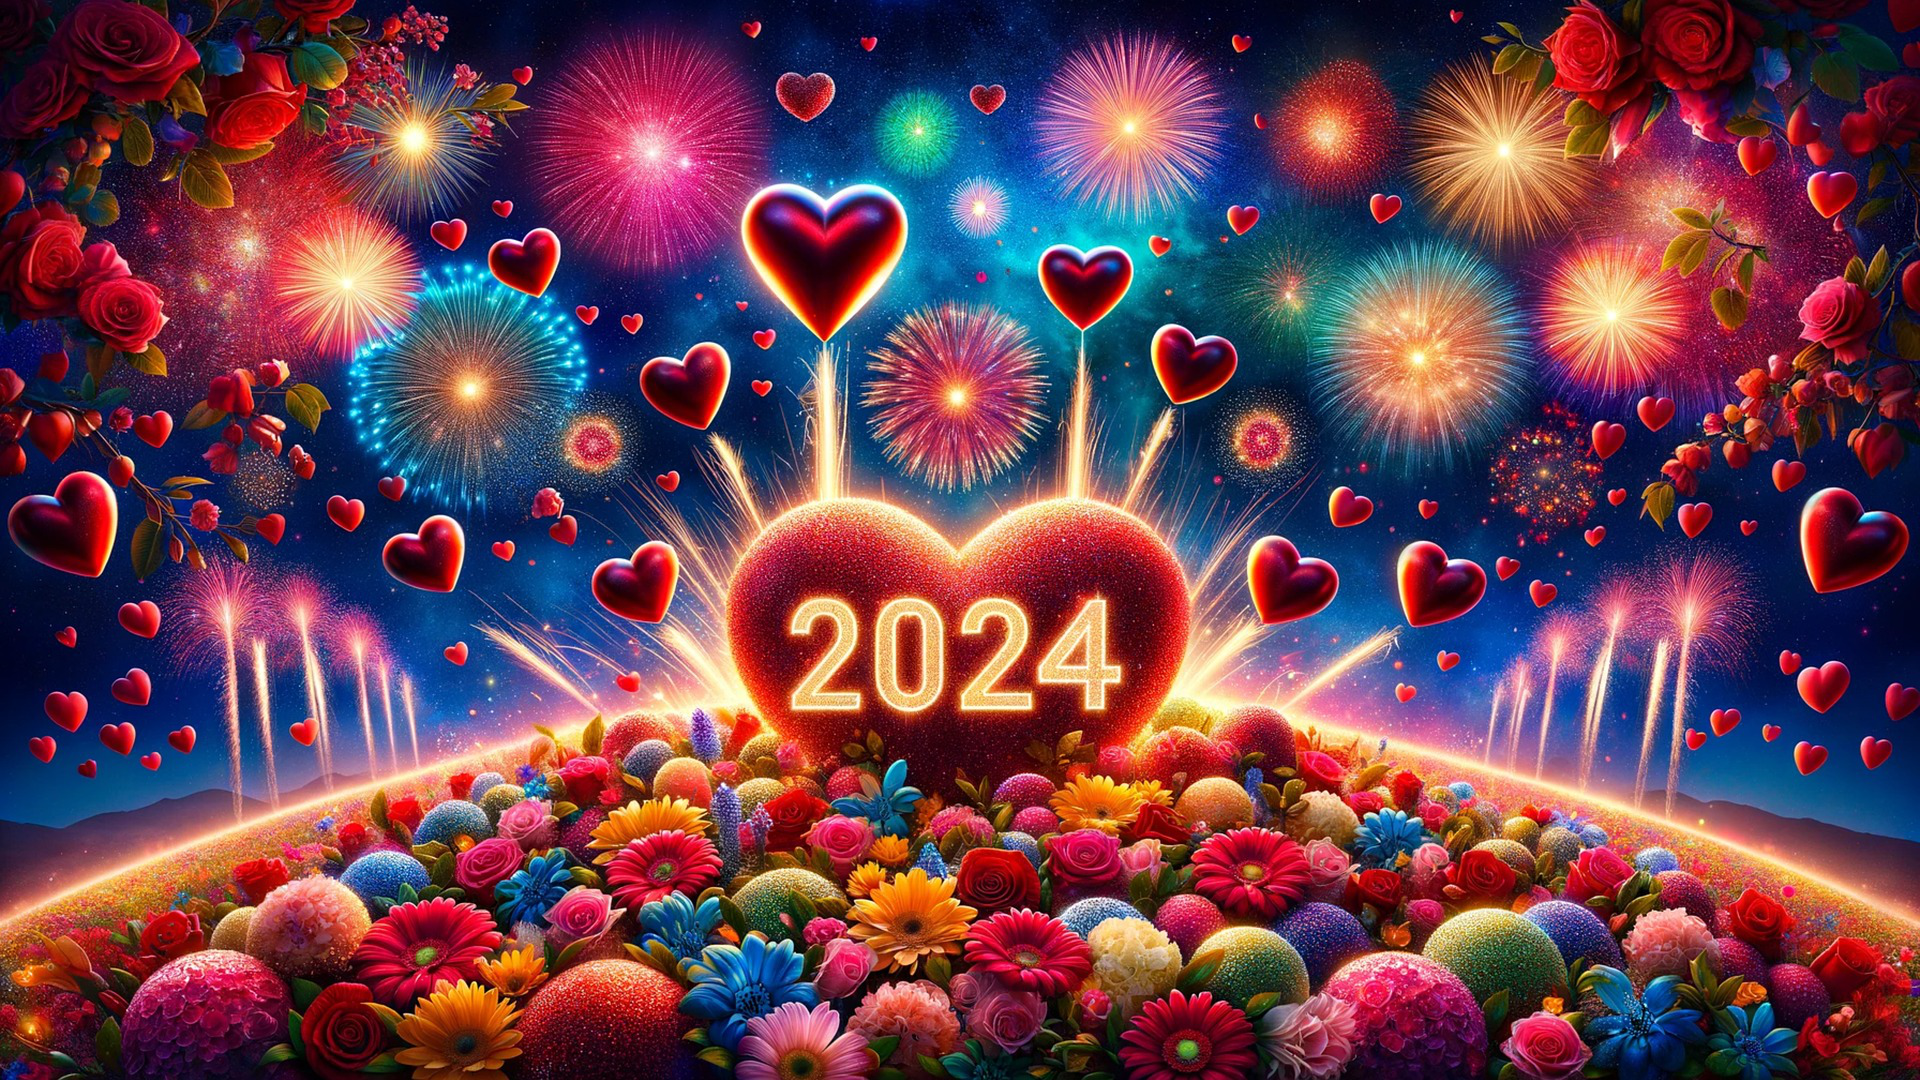 40 lời chúc mừng năm mới 2024 ngắn gọn, ý nghĩa, ấm áp nhất  - Ảnh 1.